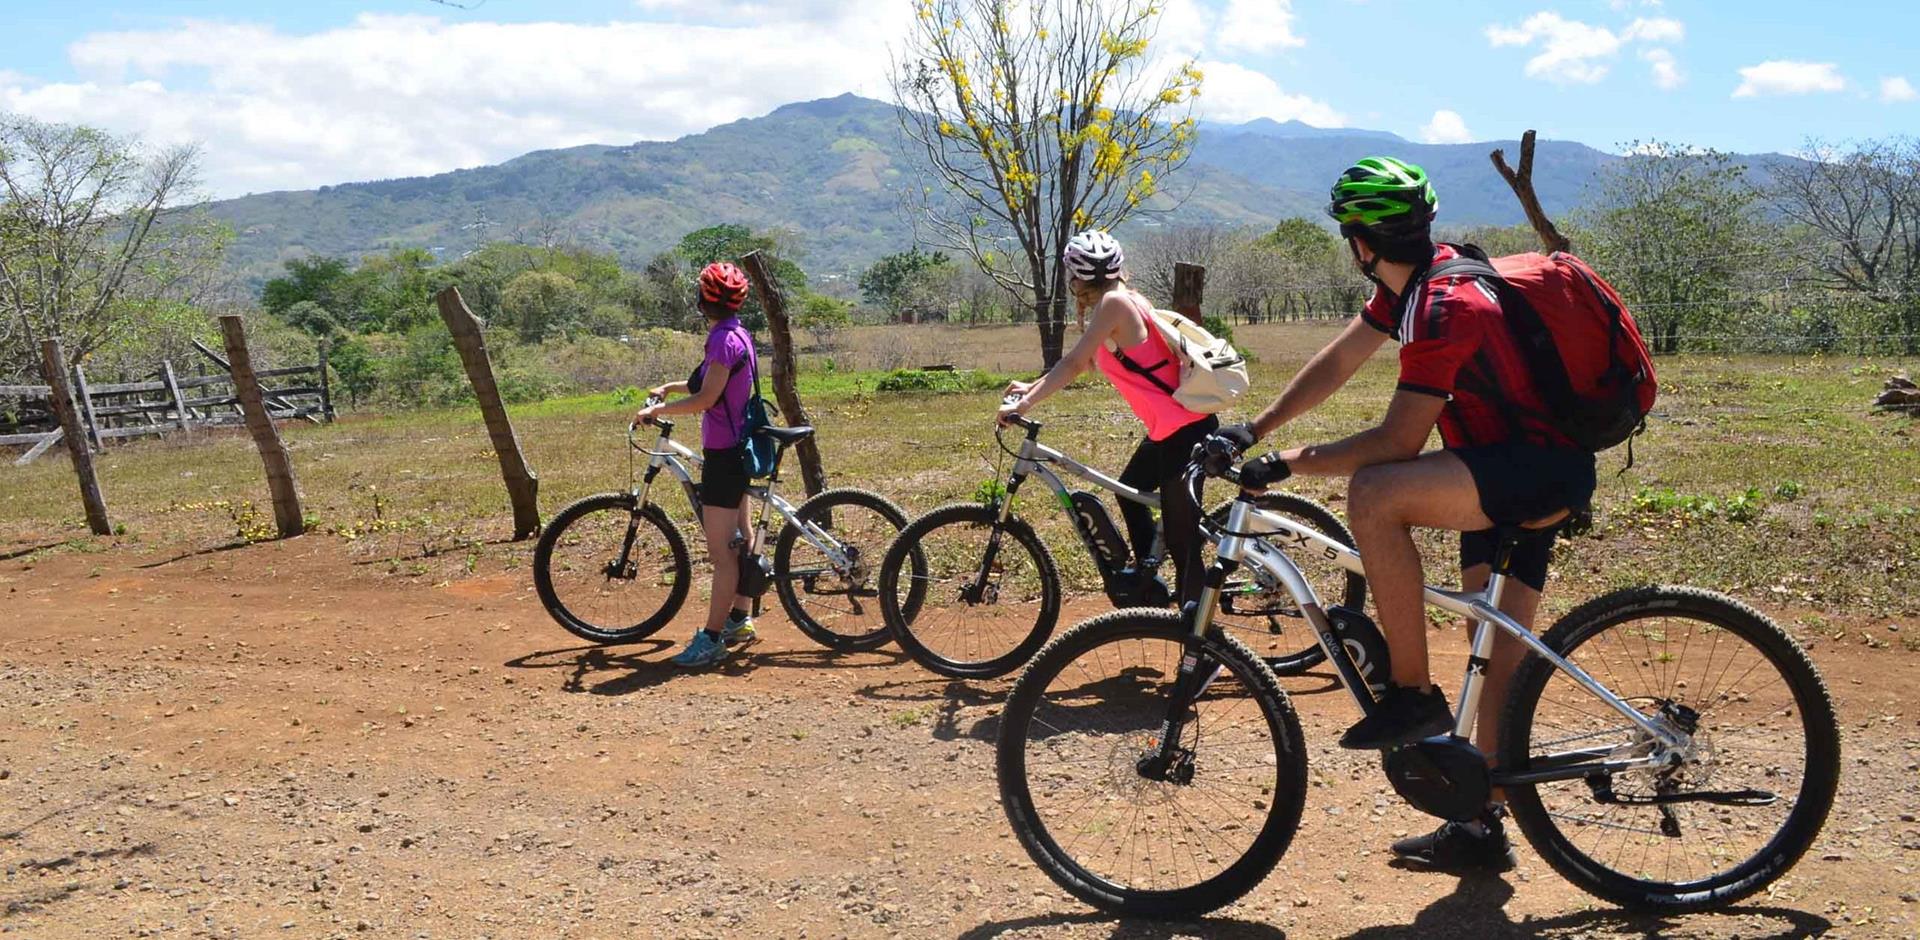 E-bike tour in Costa Rica, Central America